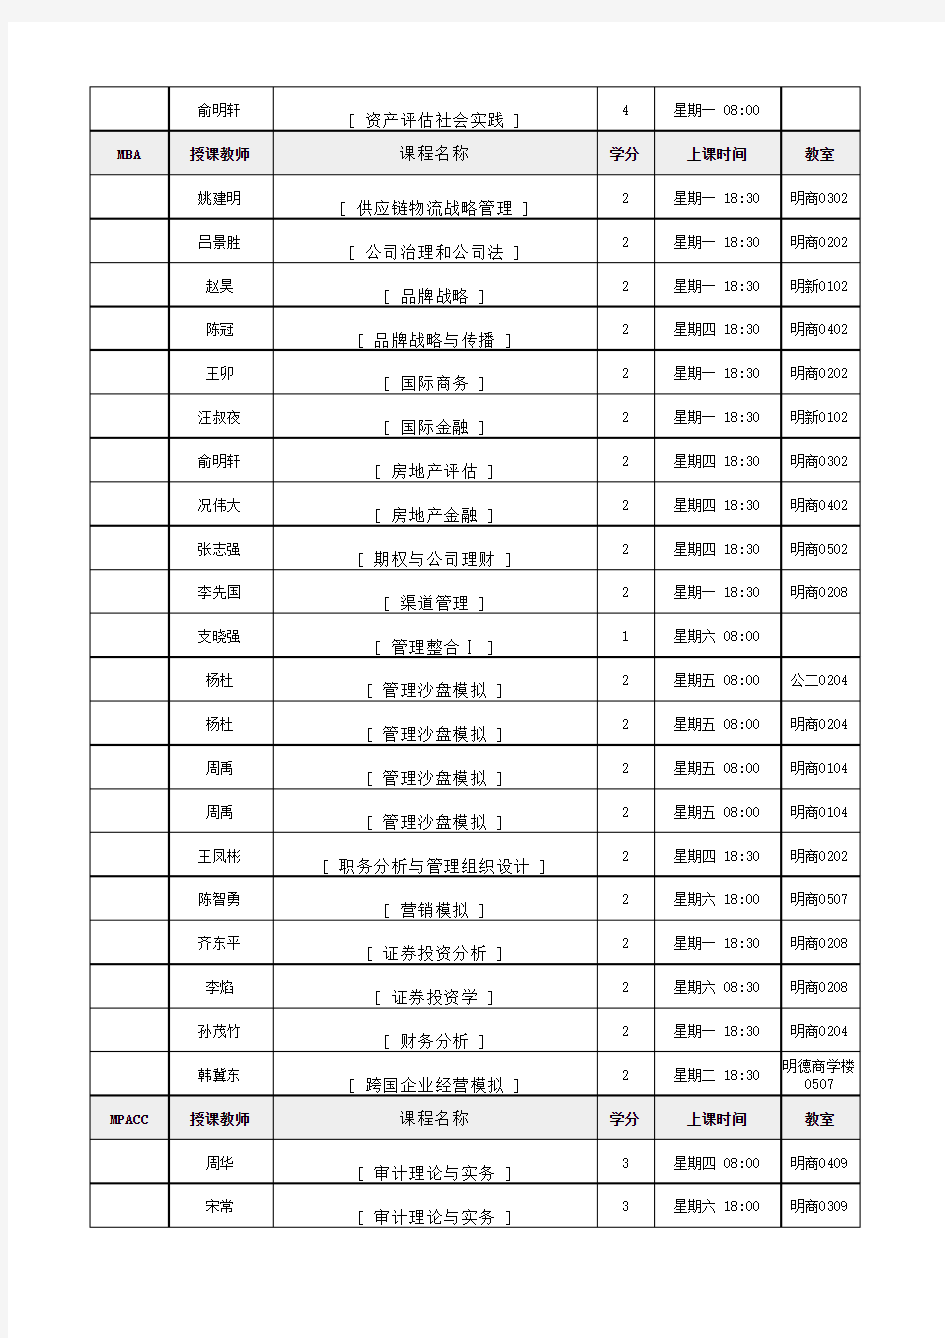 中国人民大学 2013-2014学年第1学期研究生课程表开课表